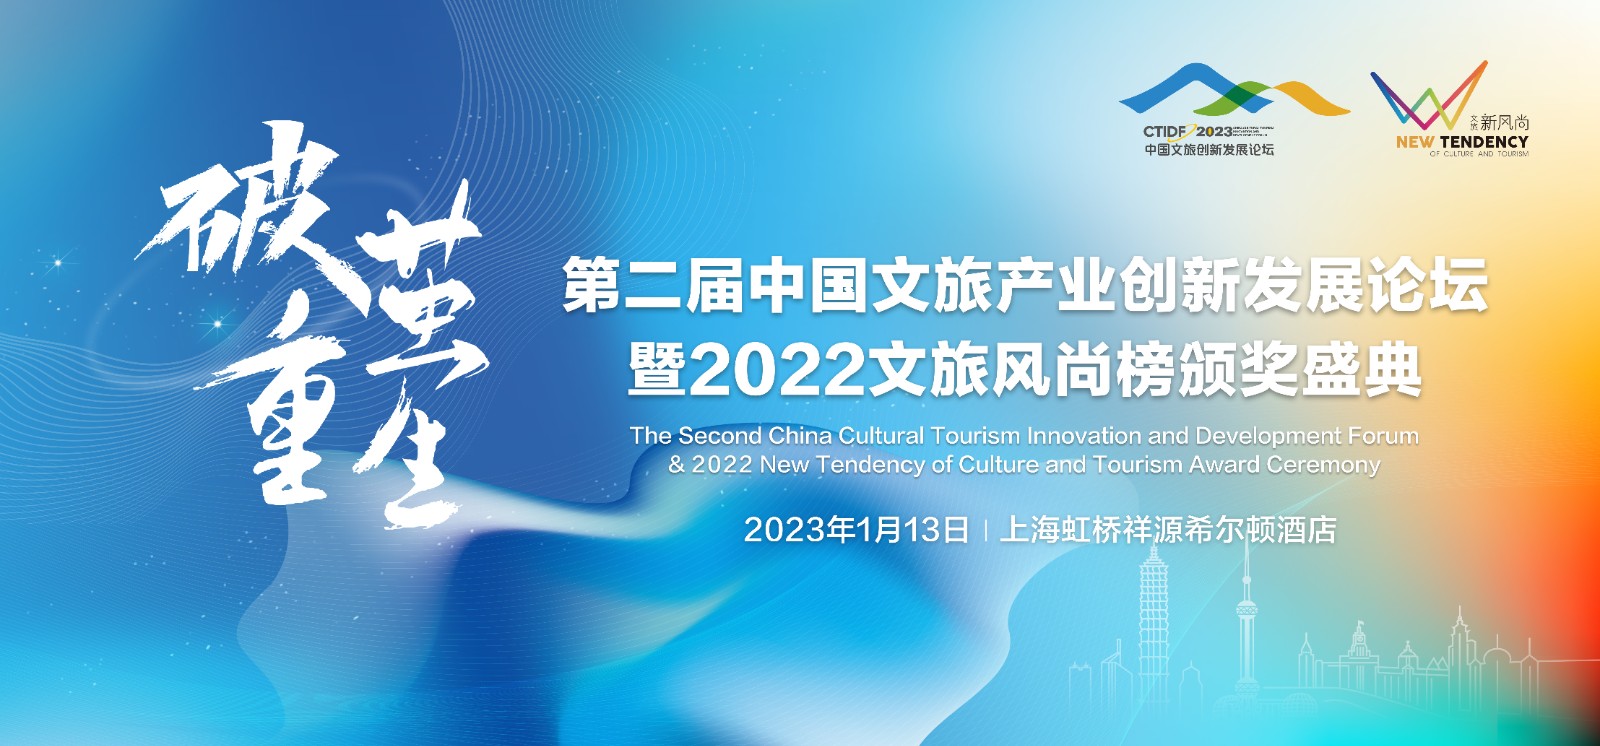 第二屆中國文旅產業創新發展論壇暨2022文旅風尚榜頒獎盛典開放報名！